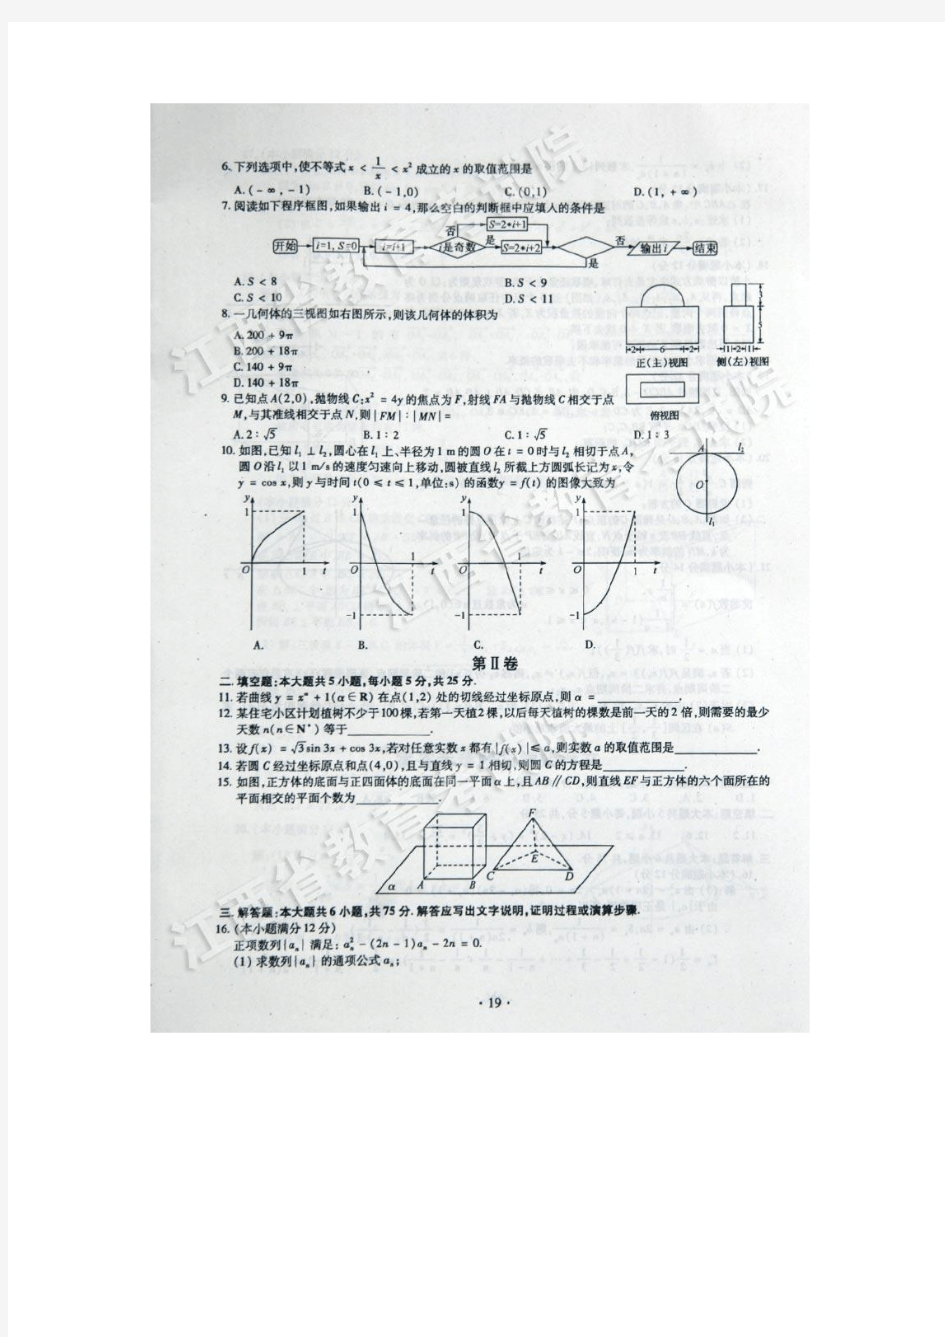 2013年江西省高考文科数学试题及答案